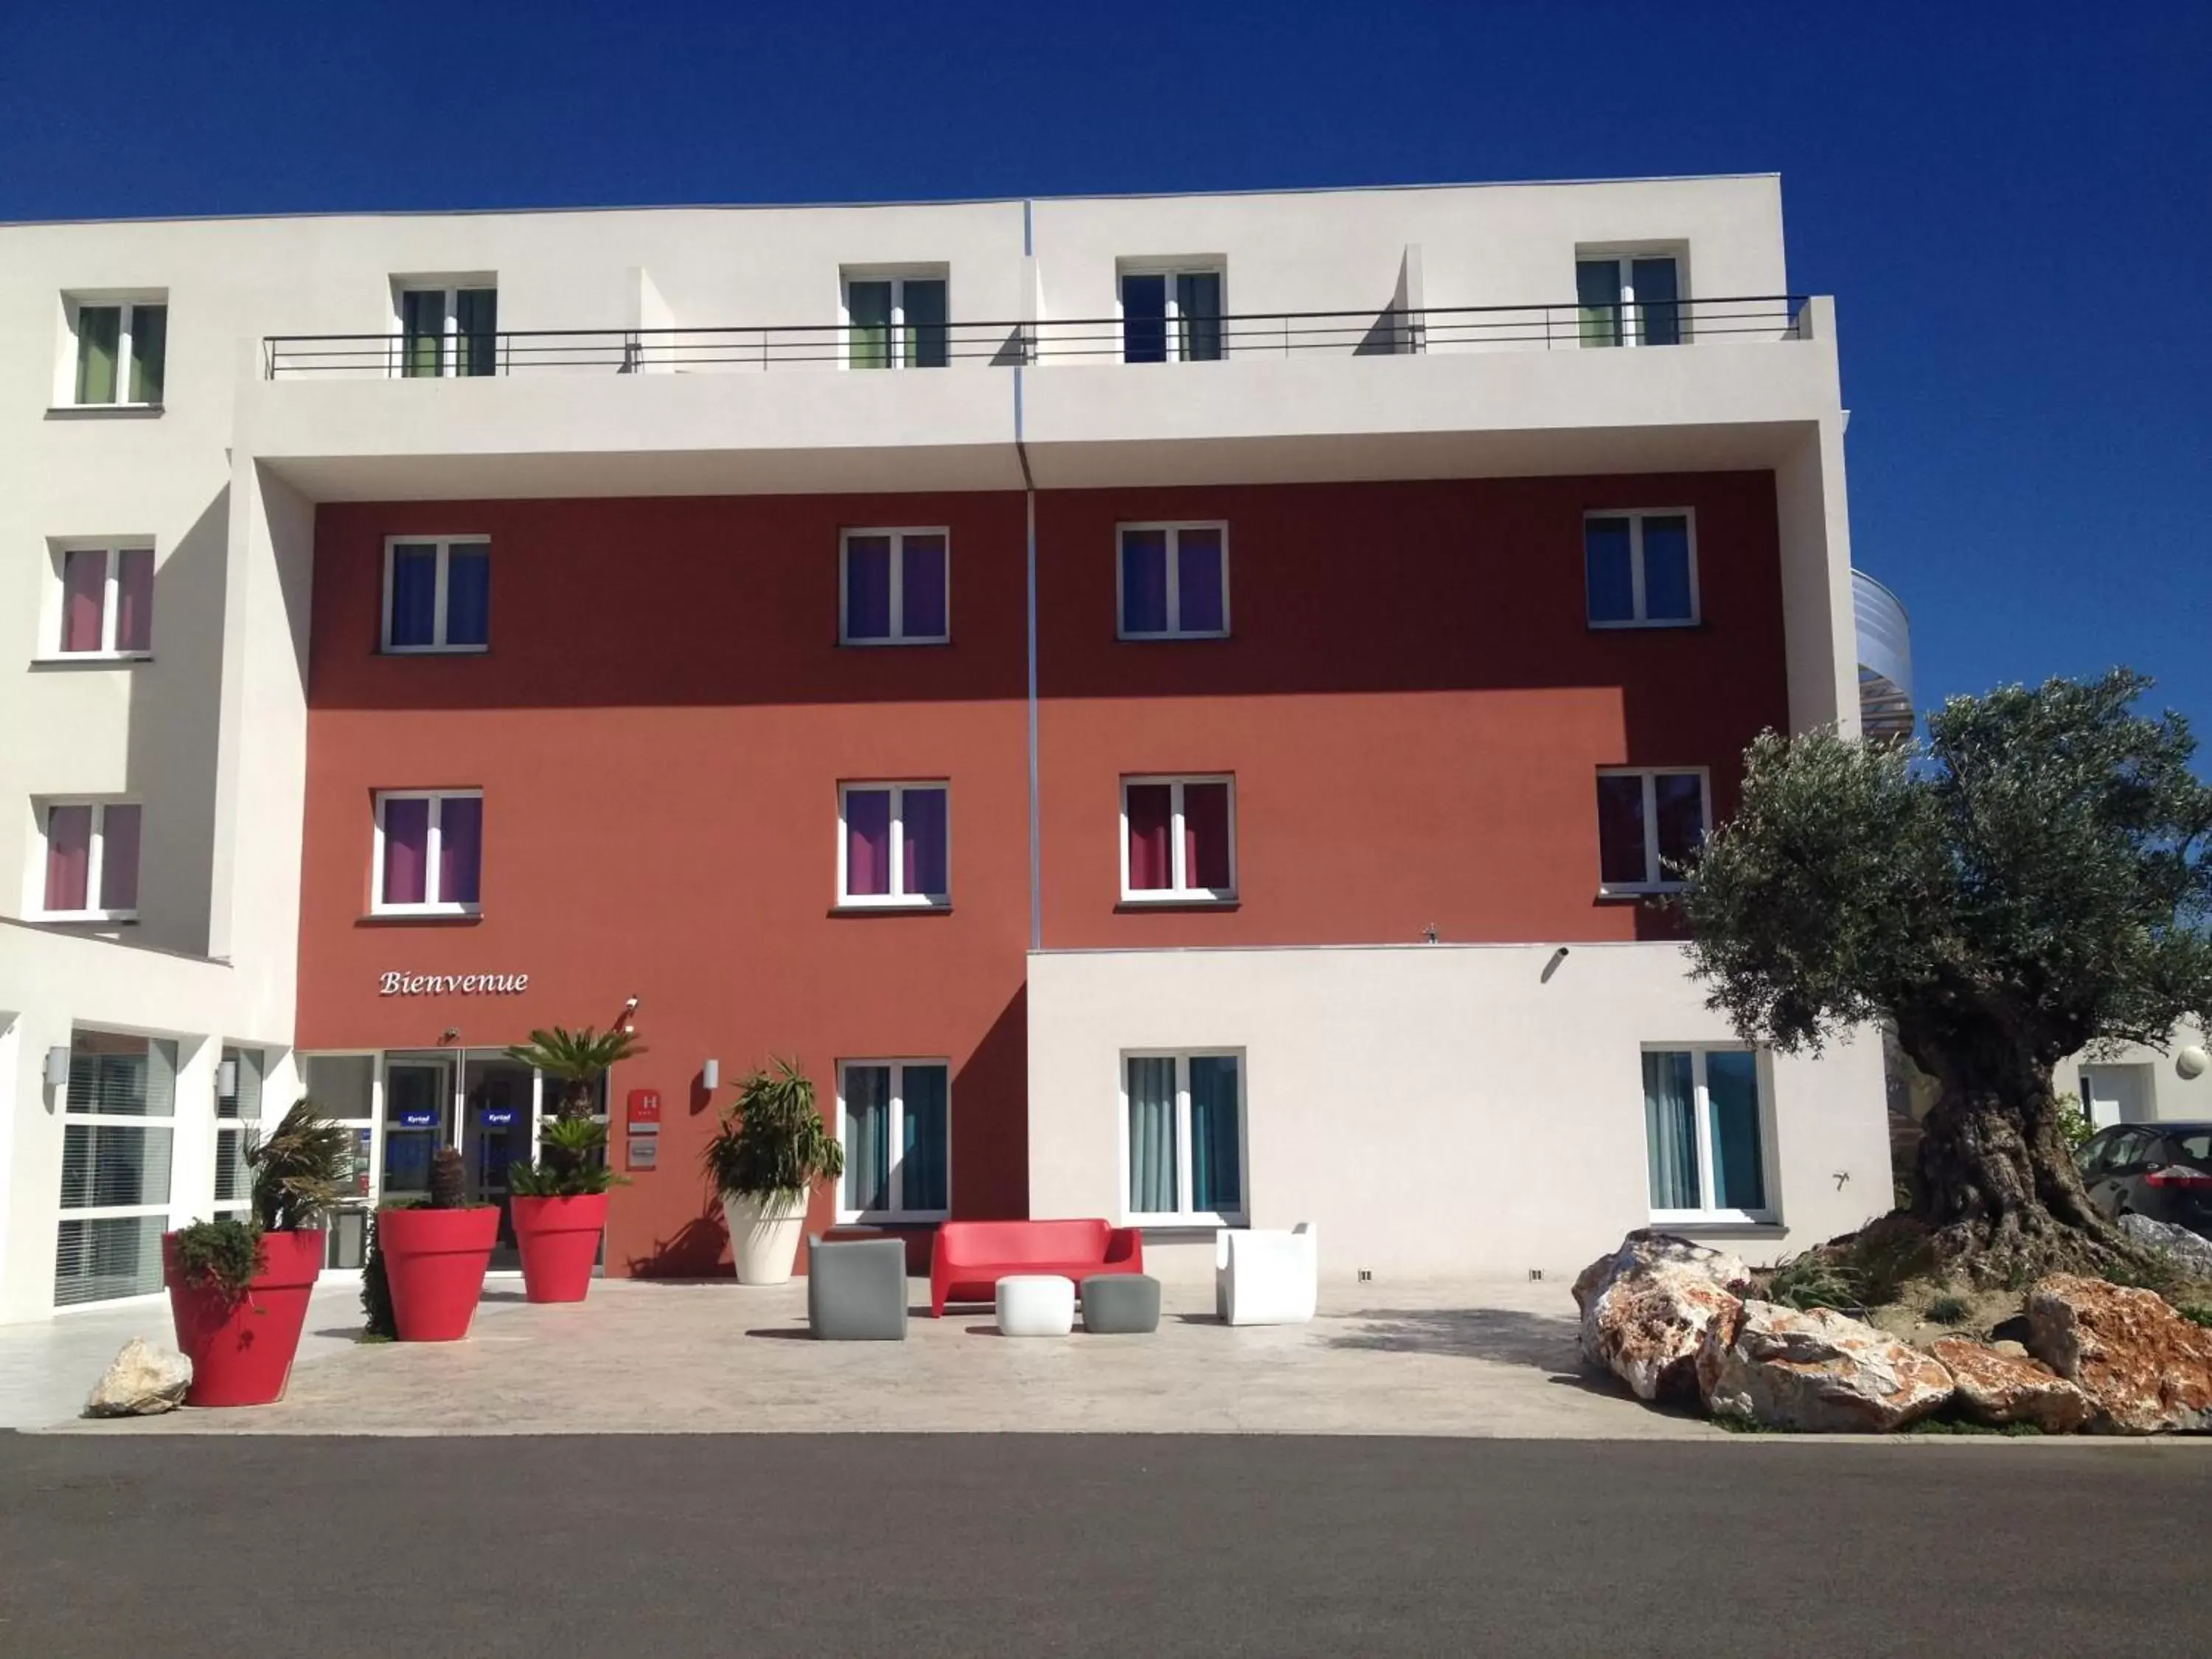 Facade/entrance, Property Building in Kyriad Perpignan Sud